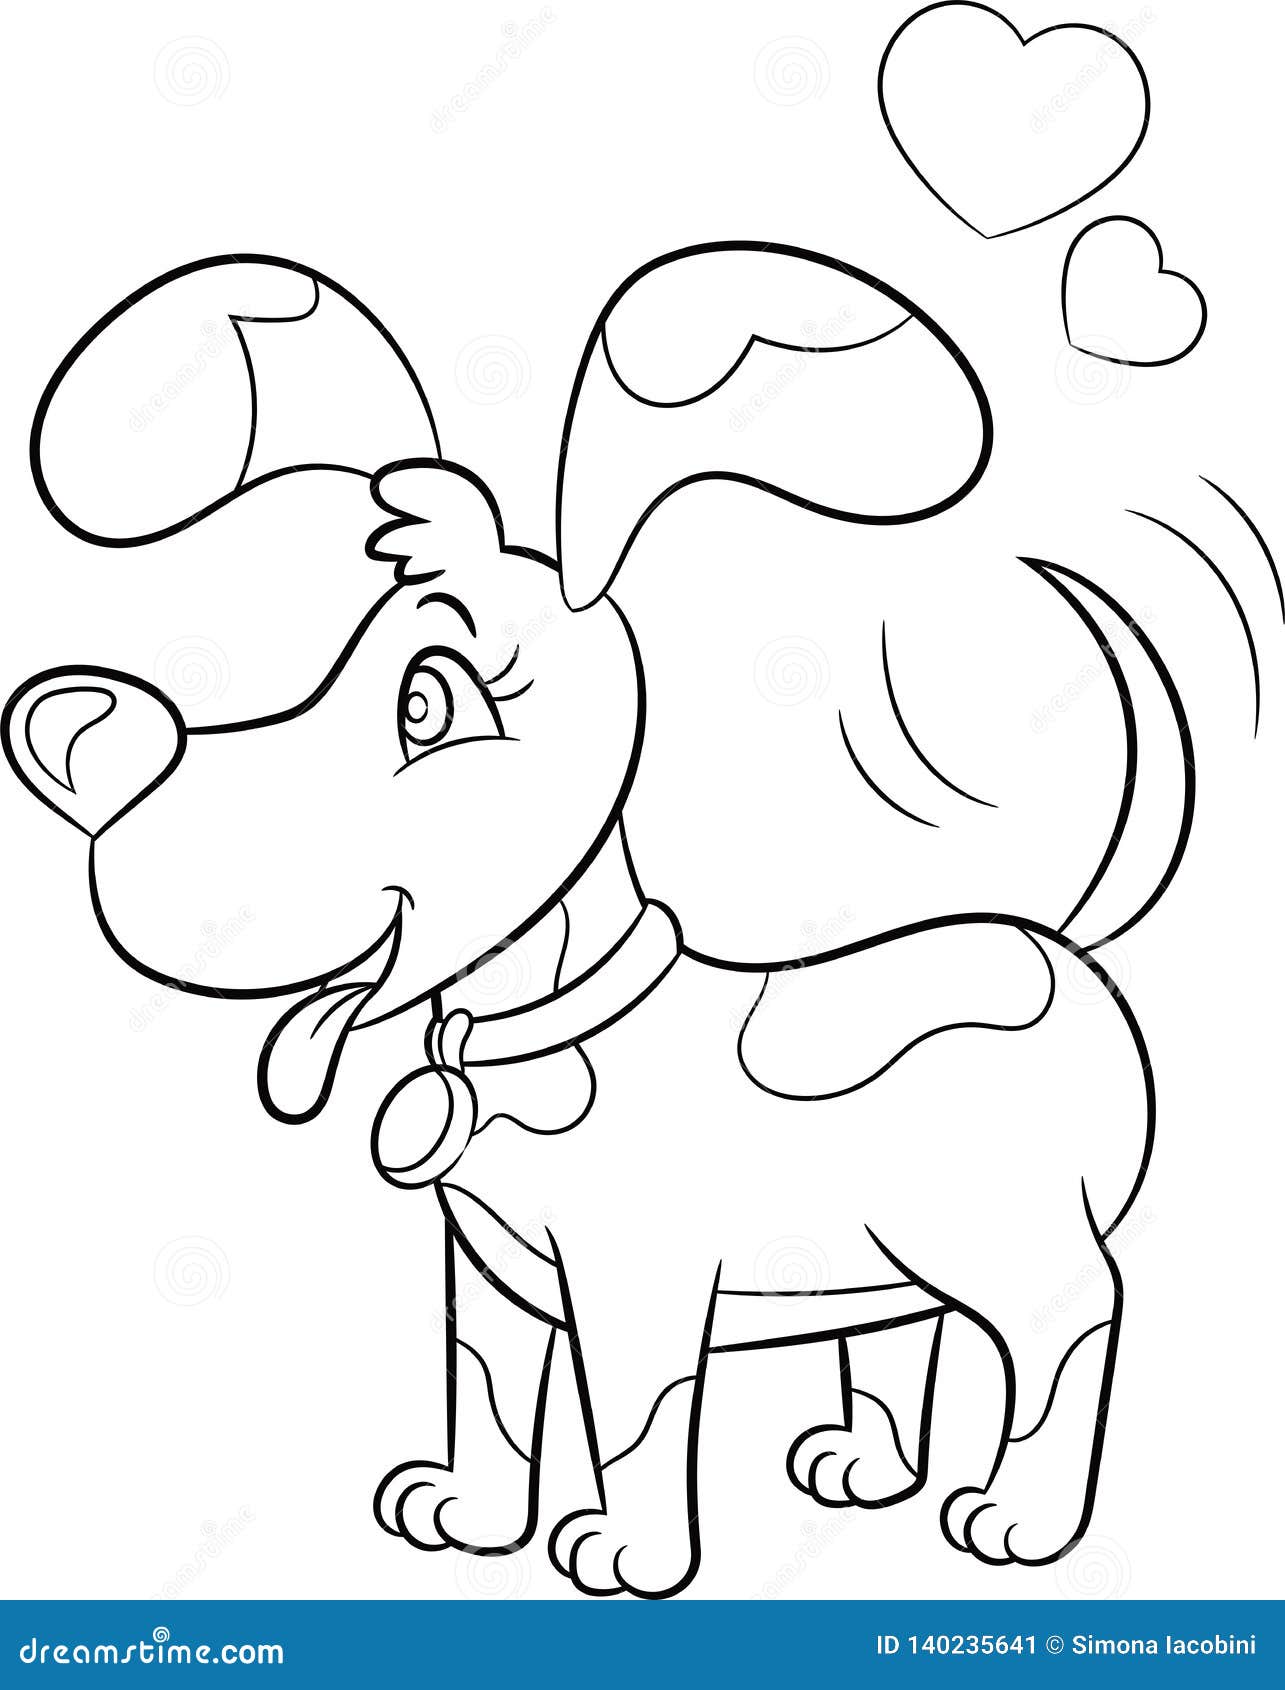 Desenho de cachorro kawaii para colorir